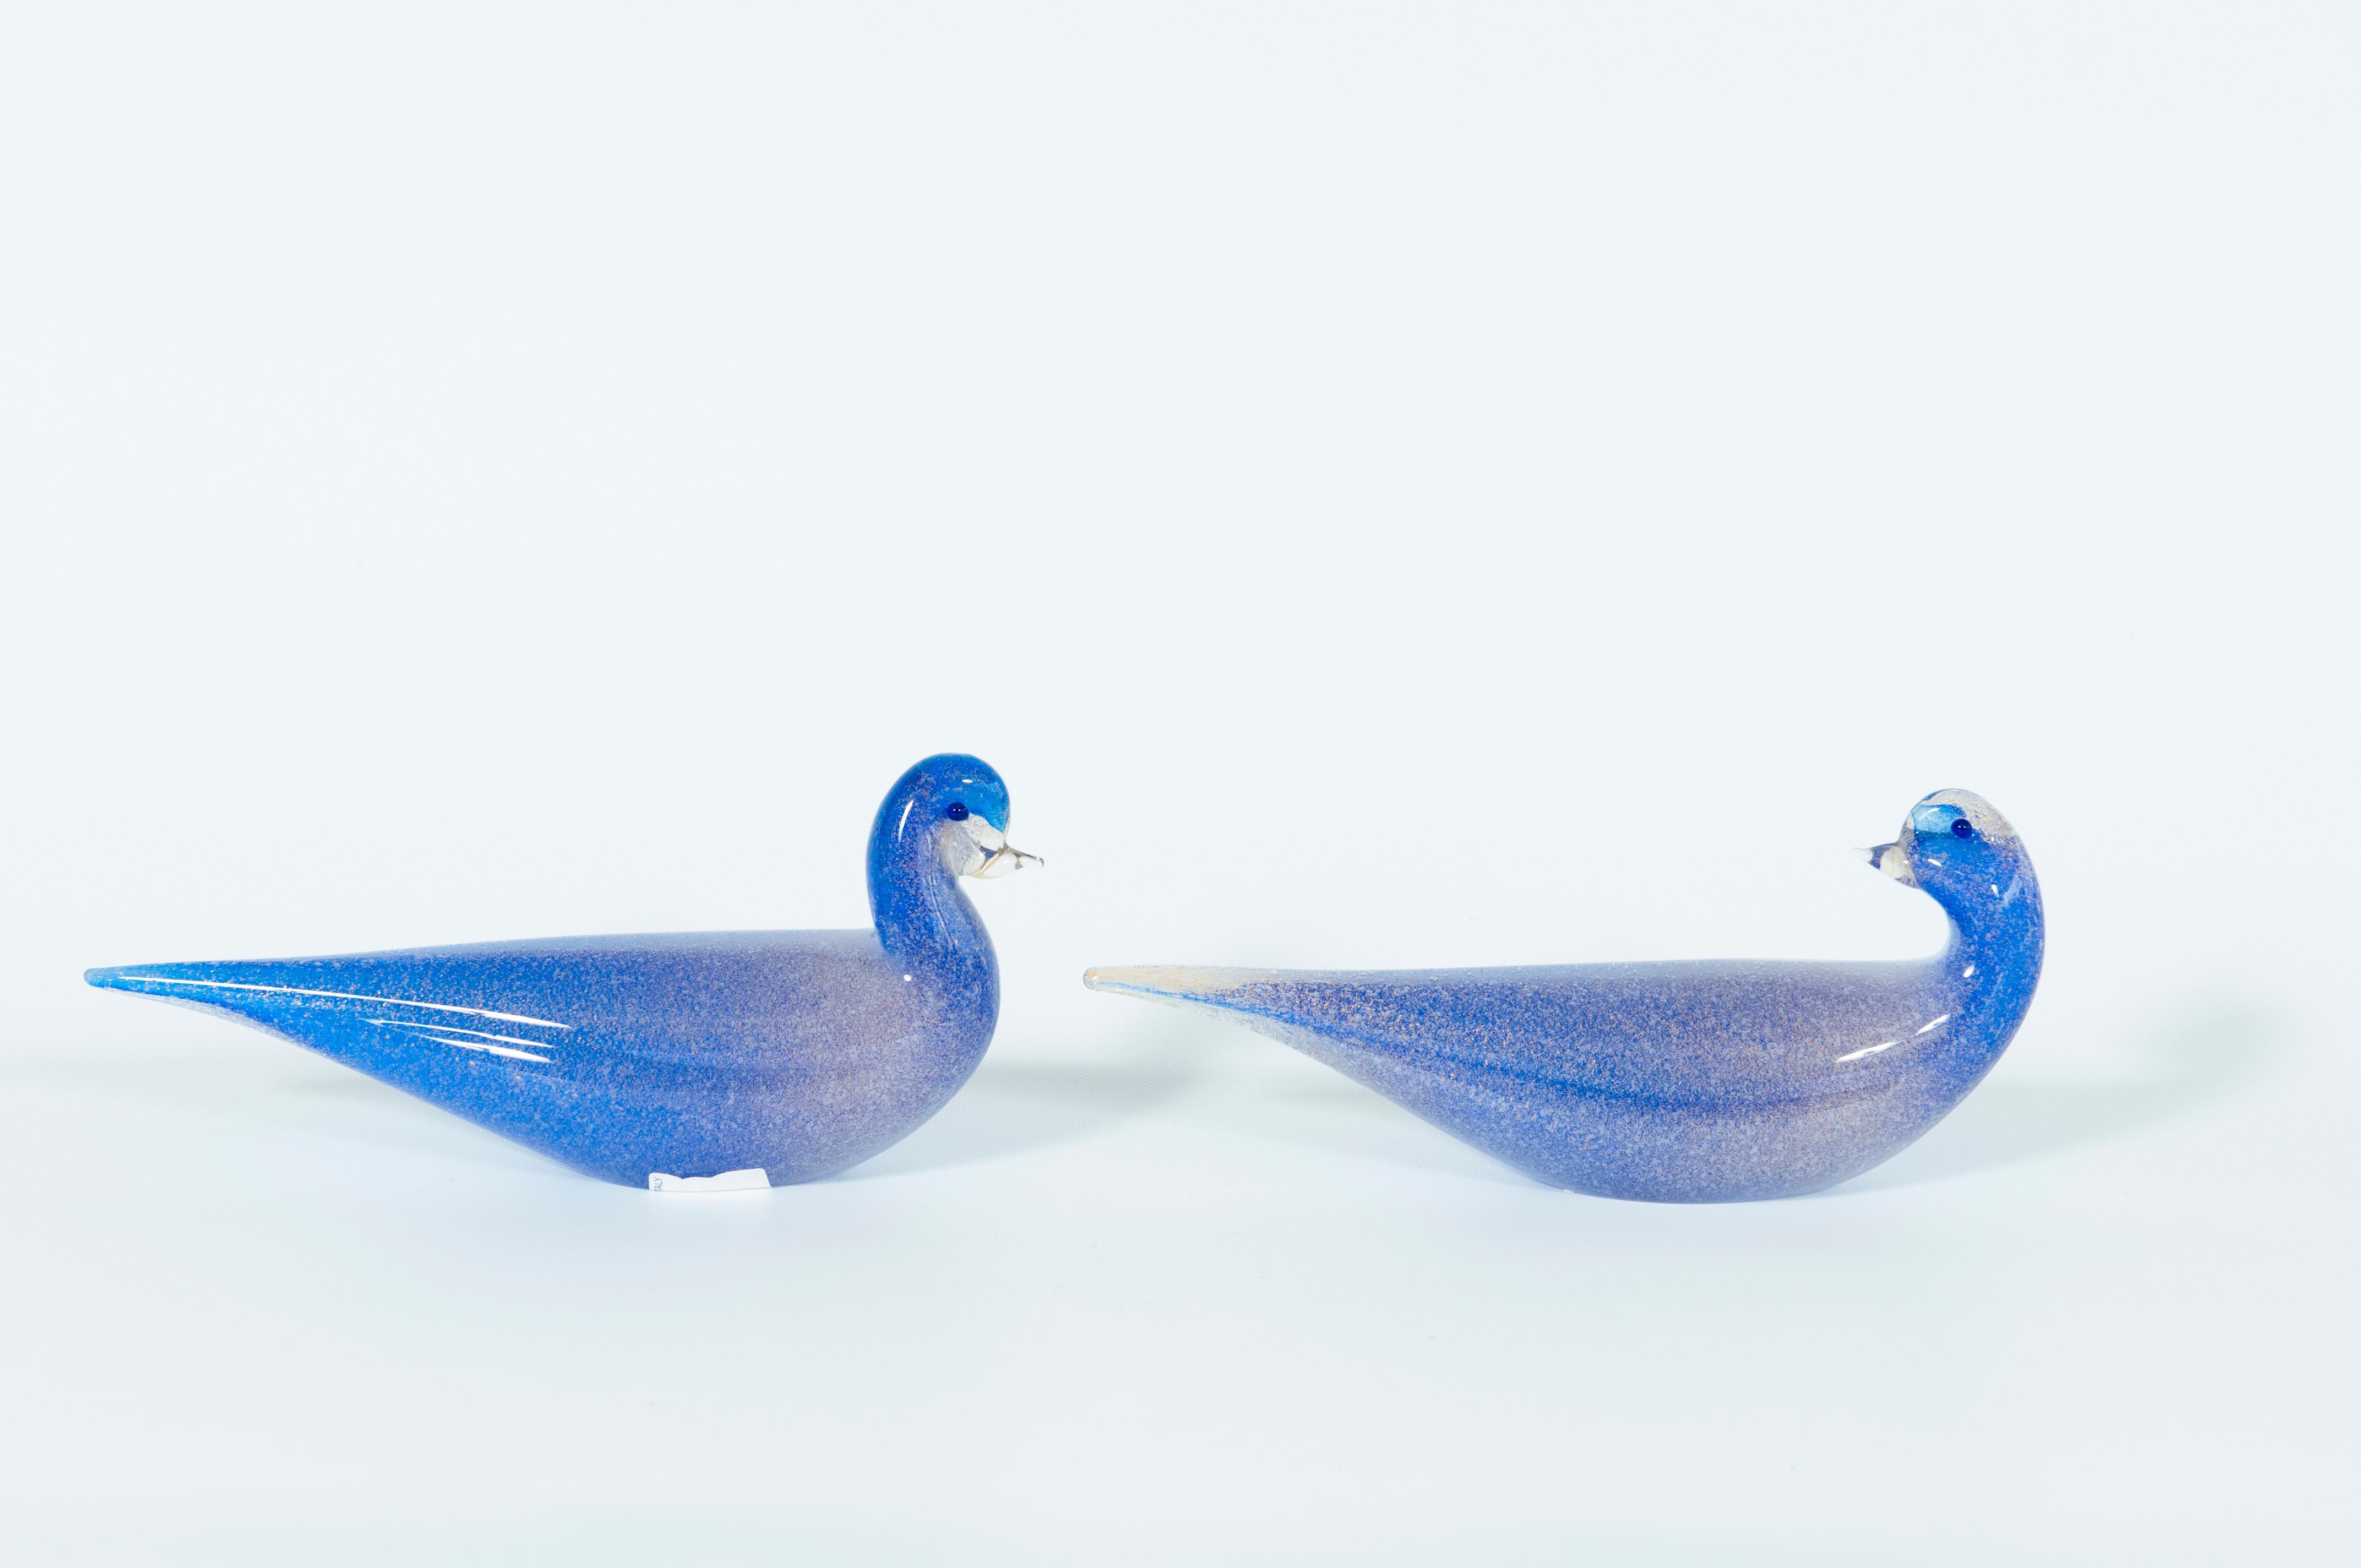 Paire de sculptures de canard en verre bleu de Murano signées Cenedese 1980 Italie avec finitions en or submergé
Cette paire artistique de sculptures de canard apportera avec elle une touche de beauté et de tradition vénitienne. Ces œuvres d'art se